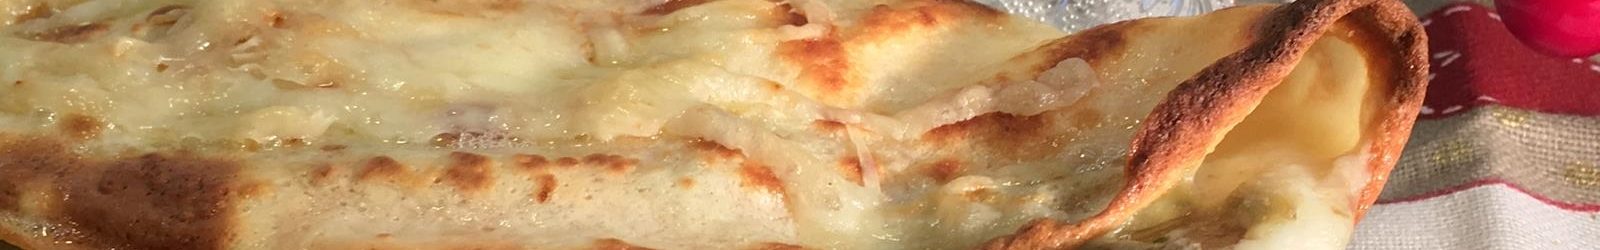 Crepes con carciofi, pancetta e mozzarella – ricetta golosa